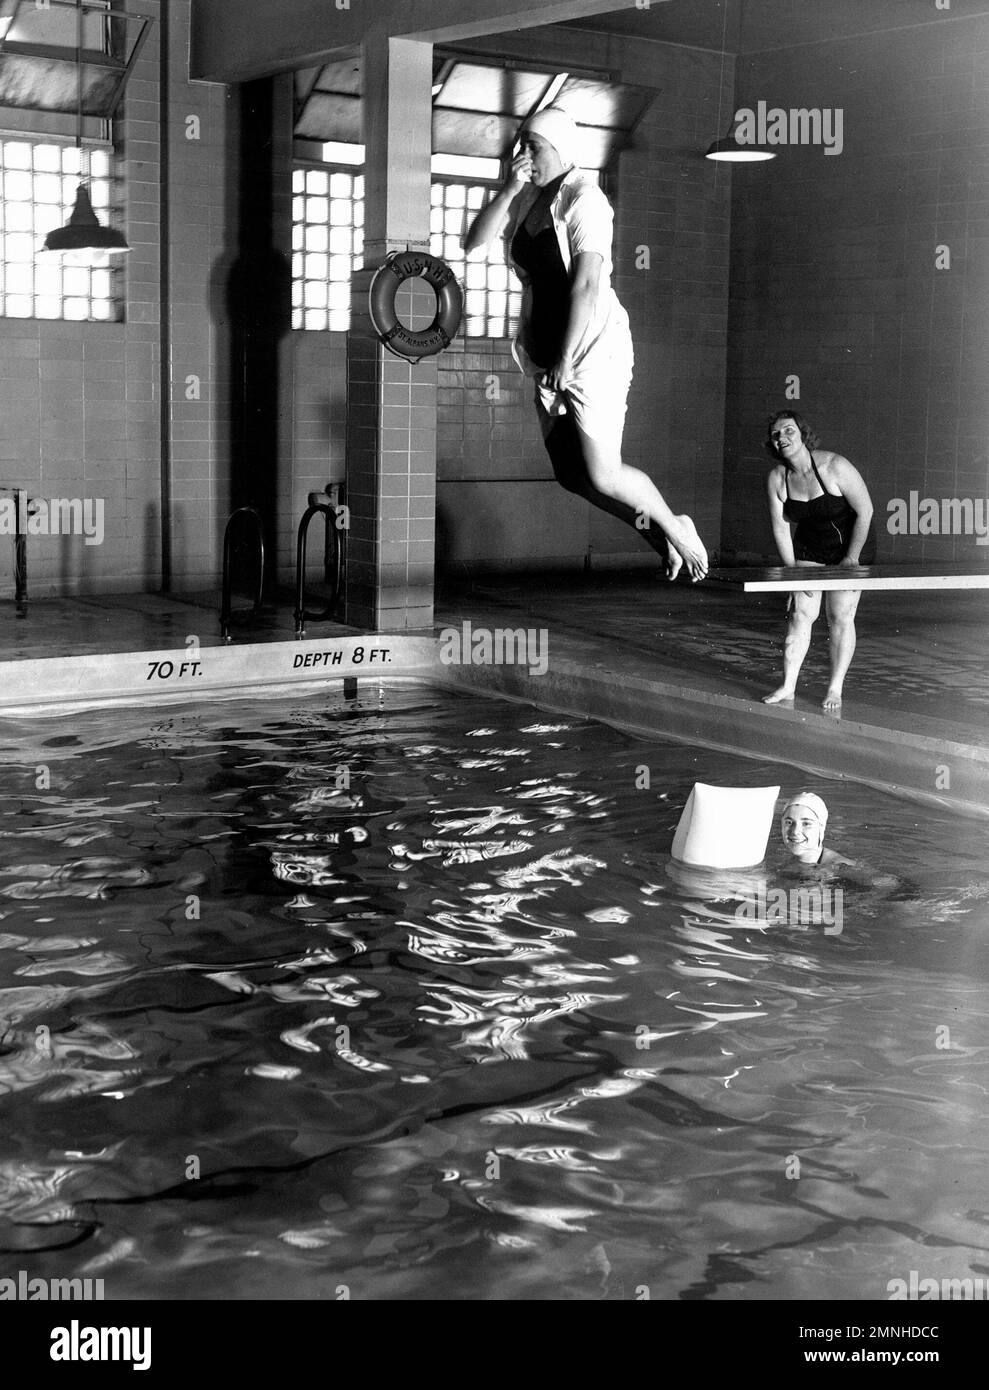 Hôpital naval St. Albans, long Island, New York. La piscine est utilisée à des fins de loisirs et de formation. Ici, une infirmière corps Indoctrinee apprend la plongée en direct du navire de la Croix-Rouge instructeur de natation dans un cours d'après-midi ca. 1958 Banque D'Images